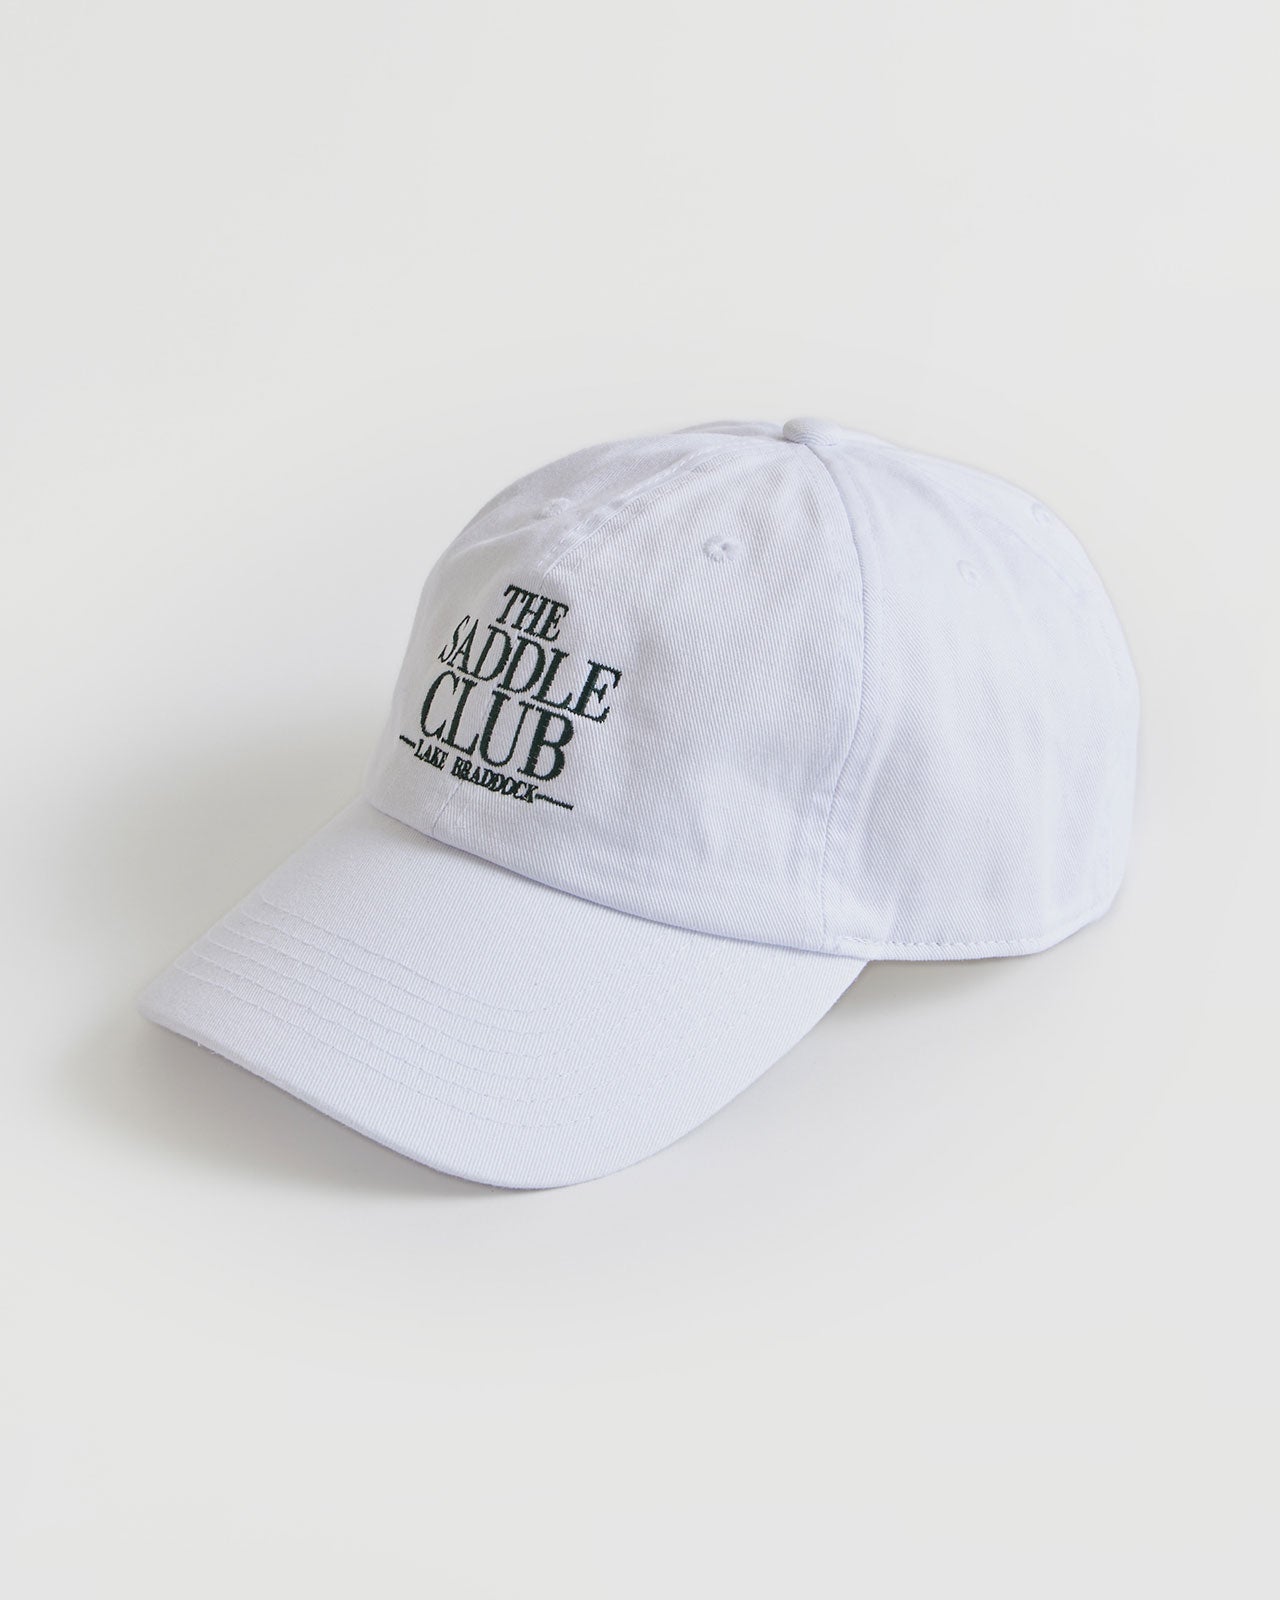 SADDLE CLUB CAP – Shinzone